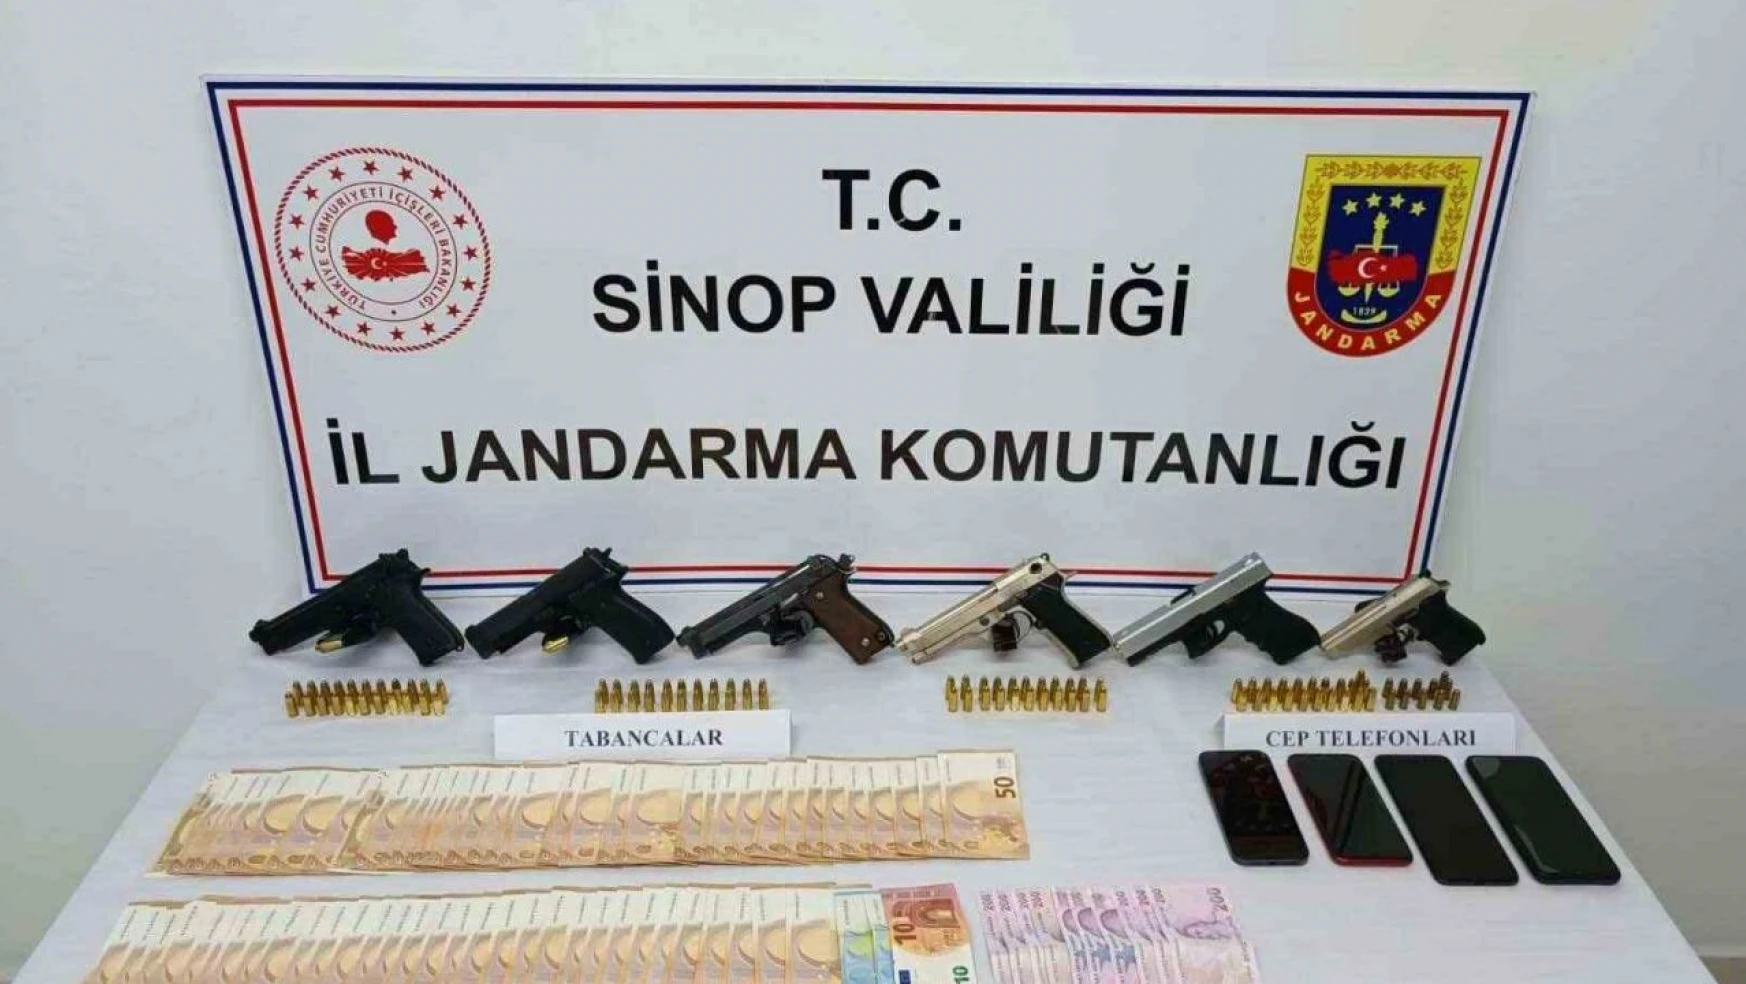 Sinop'ta Ruhsatsız Silah Operasyonu: 5 Gözaltı